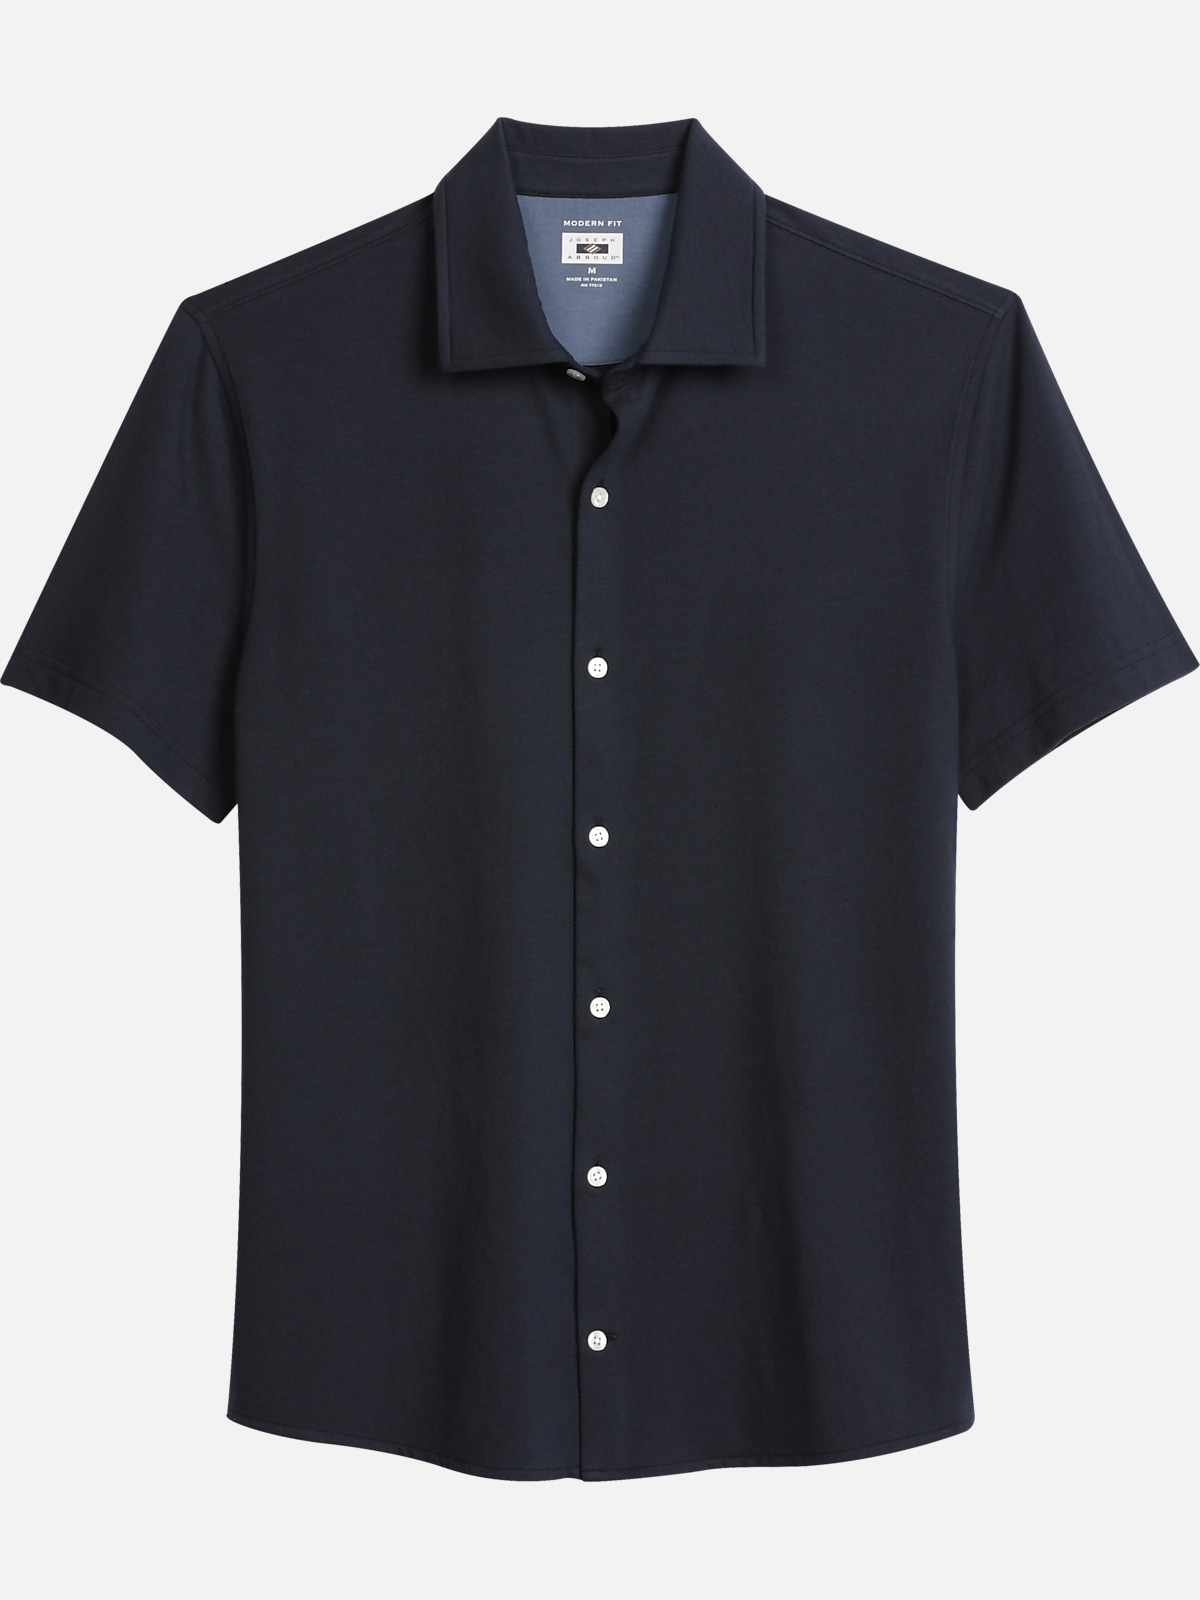 Joseph Abboud Modern Fit Knit Sport Shirt | All Sale| Men's Wearhouse